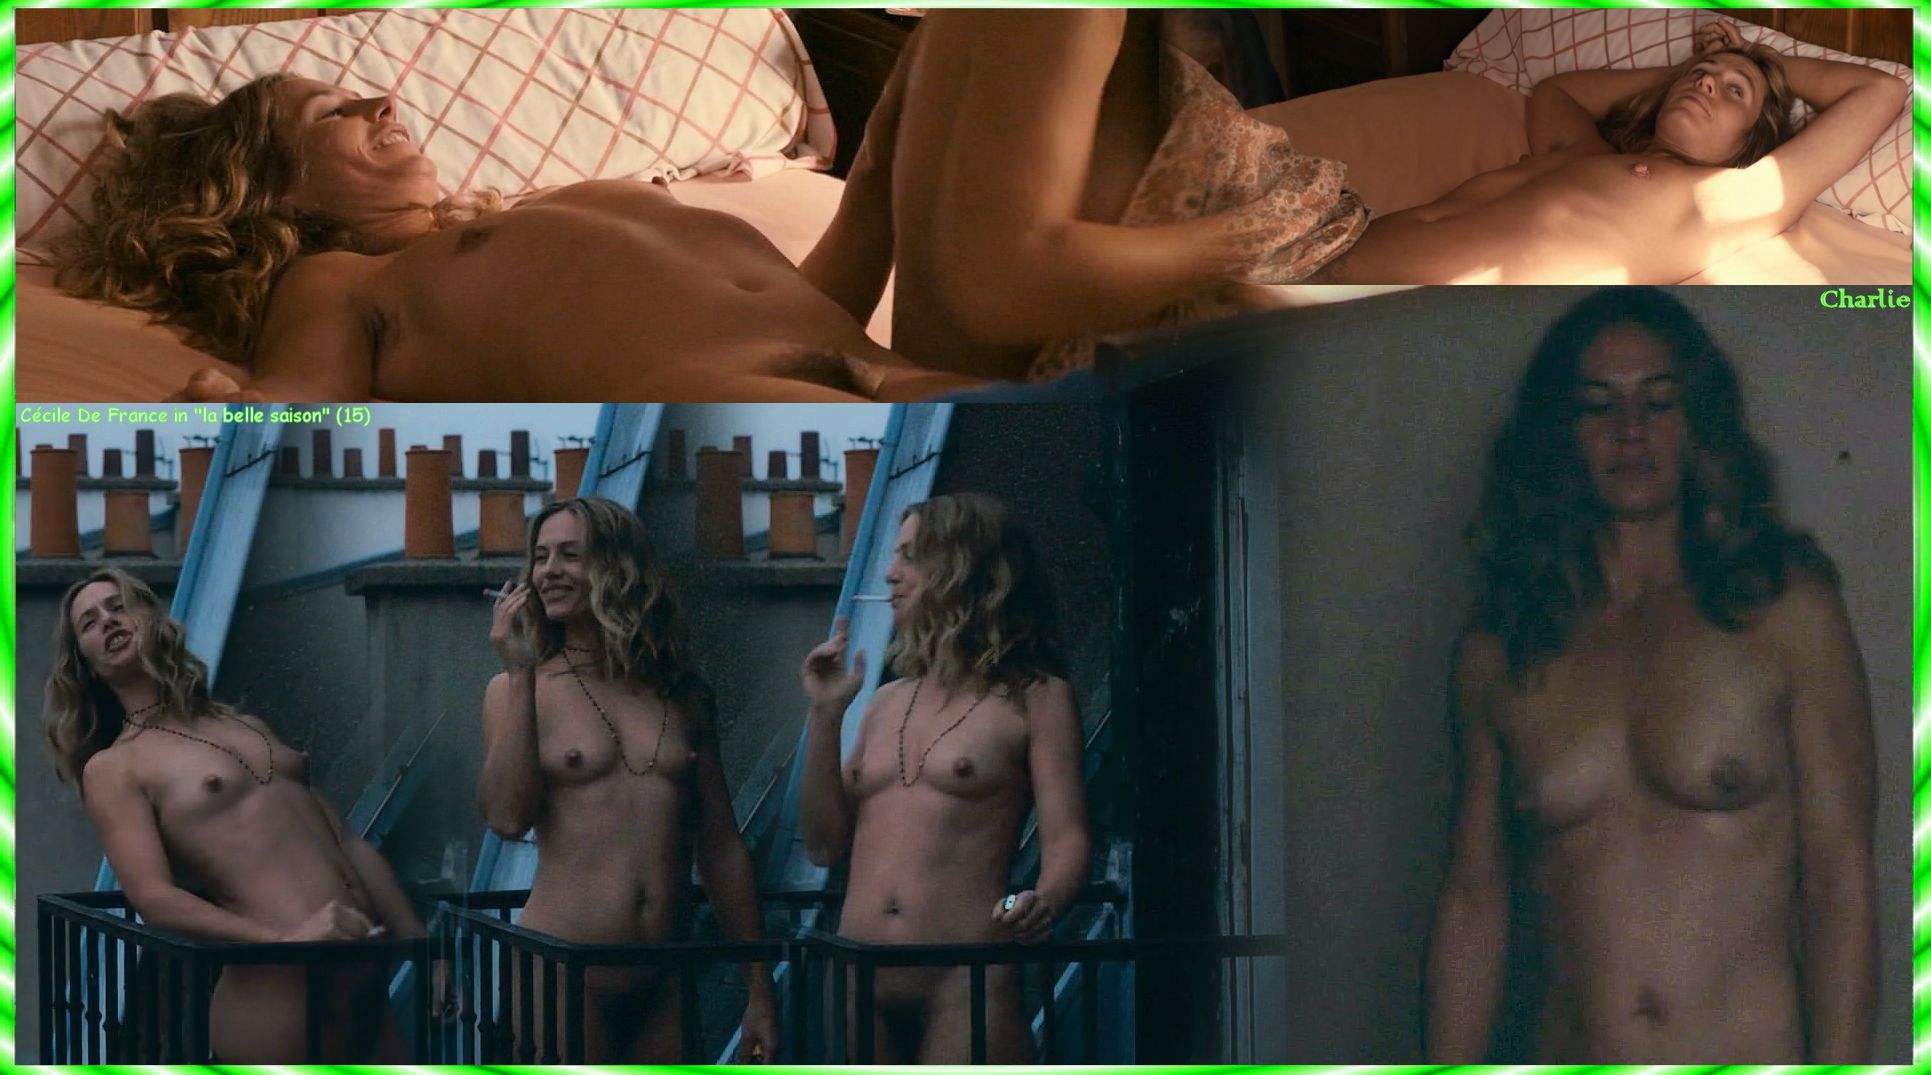 Naked Cécile De France in La belle saison 34440 | The Best Porn Website nud...